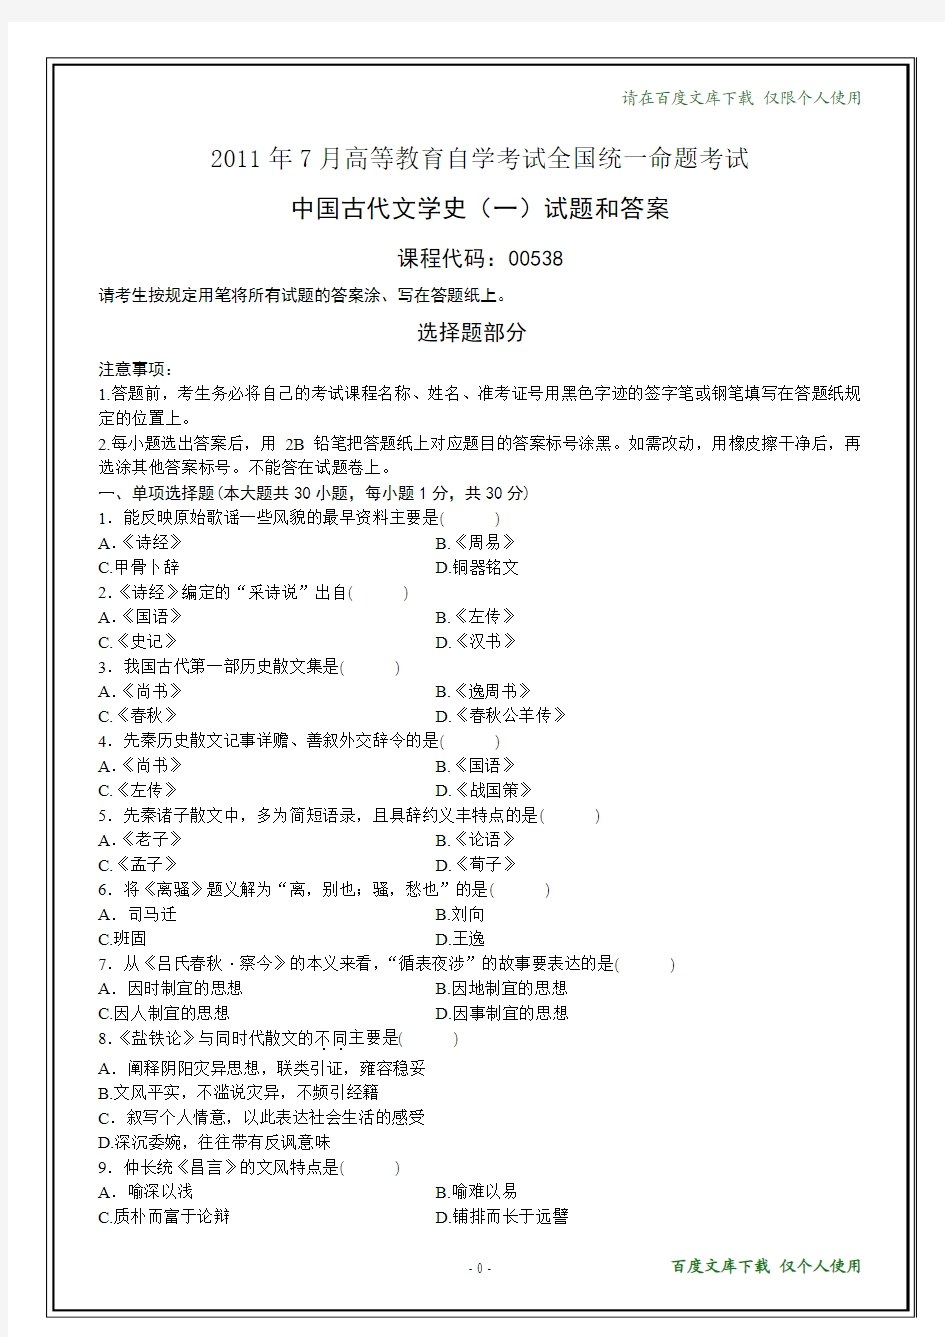 全国2011年7月自考《中国古代文学史(一)》试题和答案(在最后)